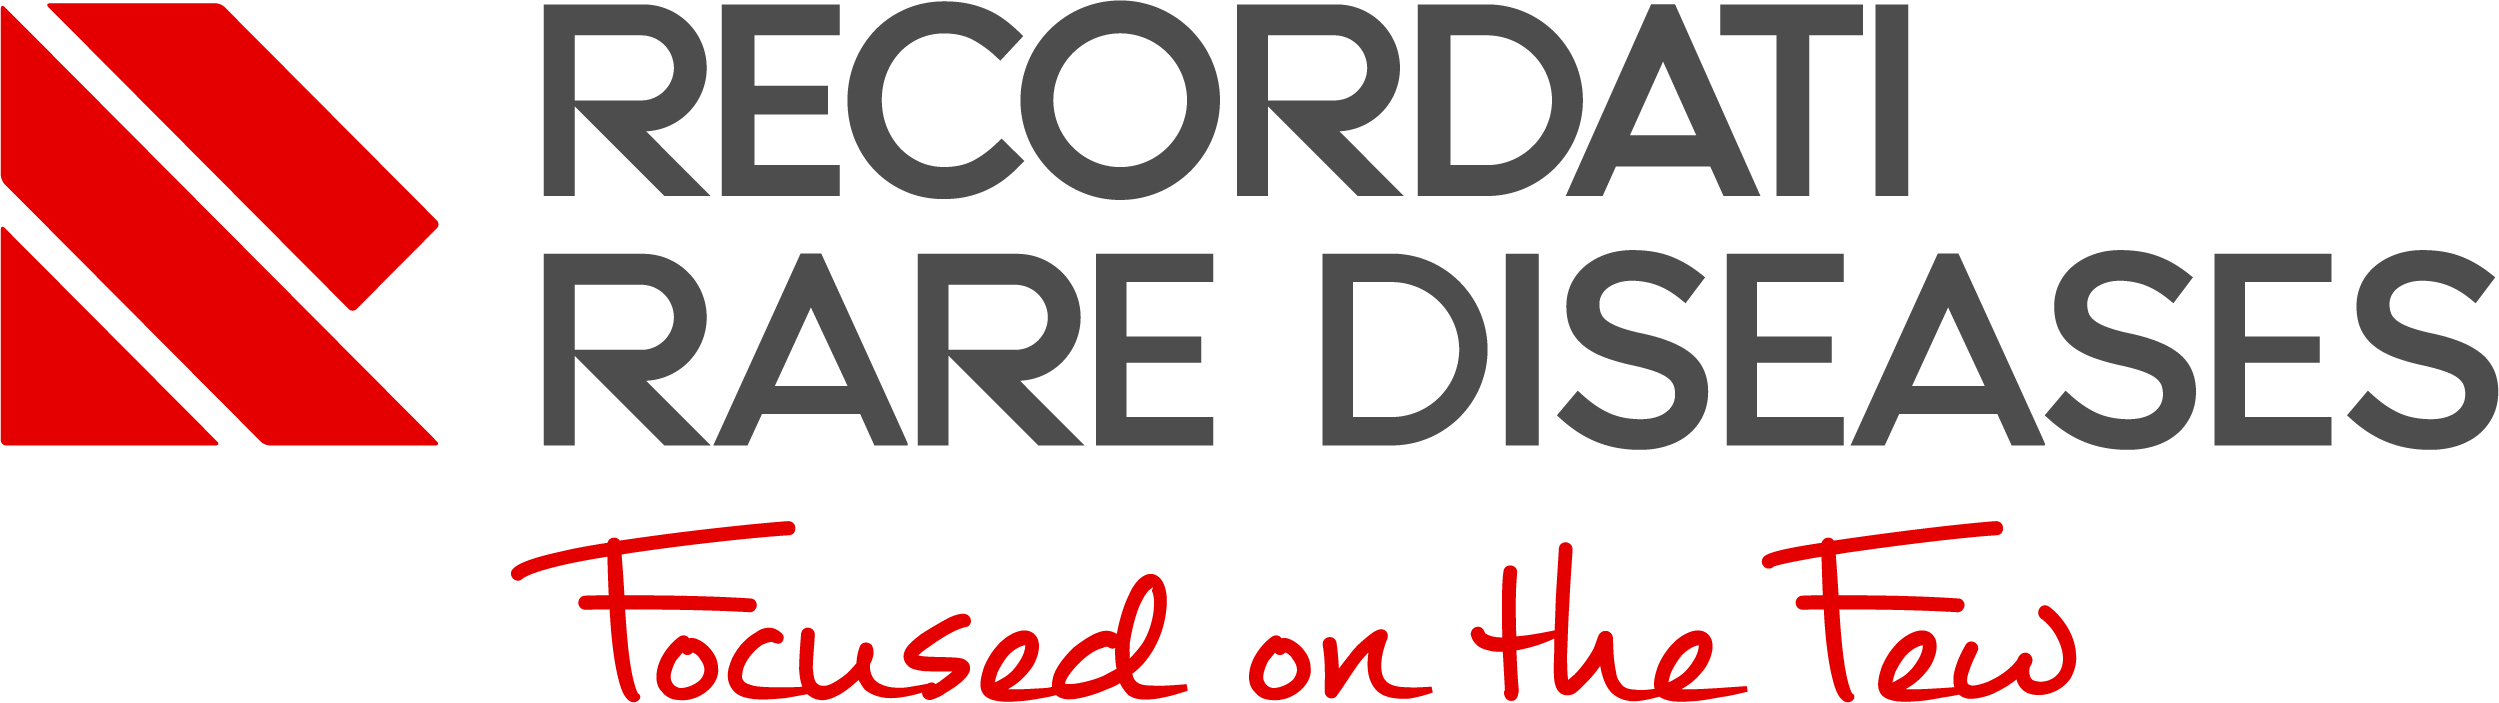 recordati-rare-diseases-logo.jpg